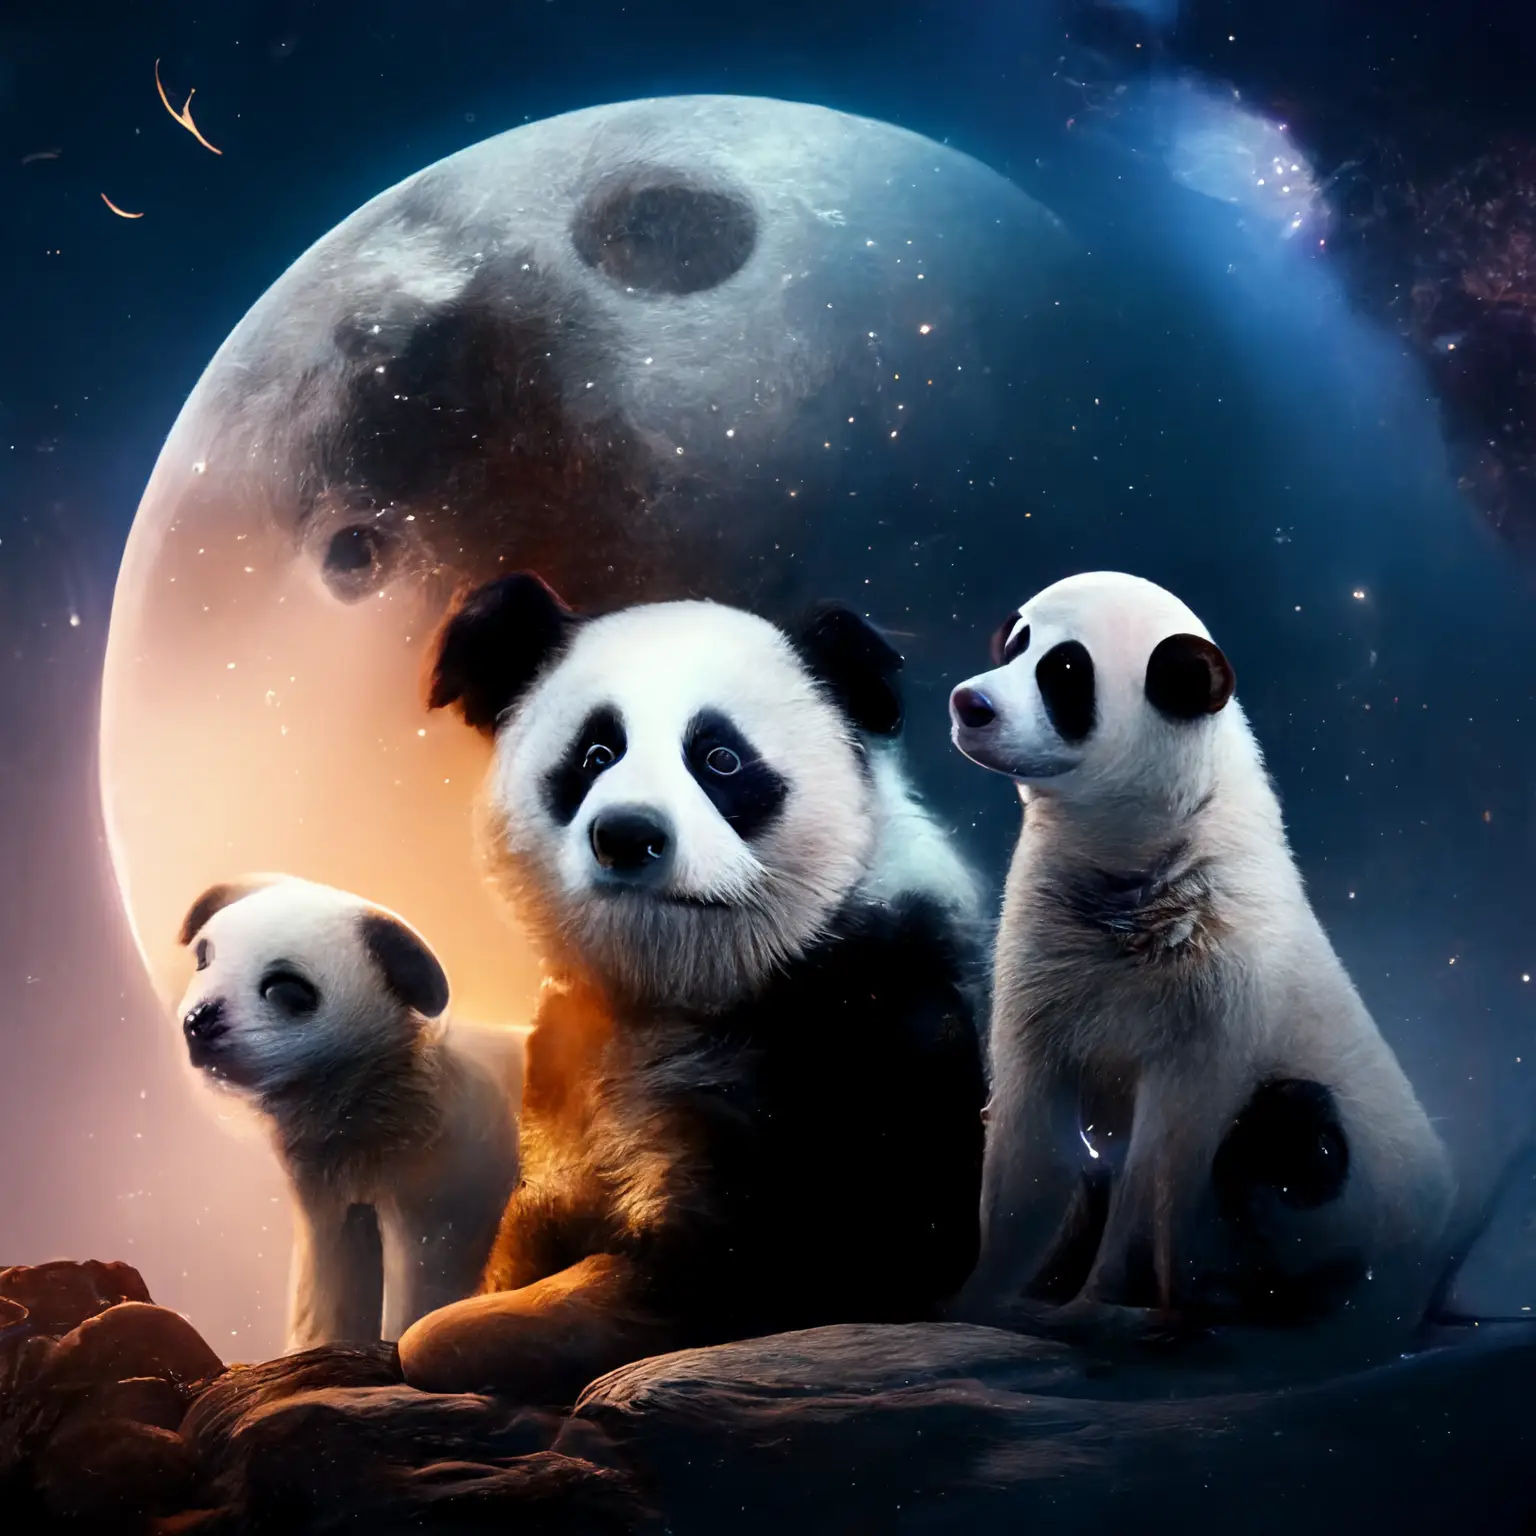 1 panda & 2 dogs